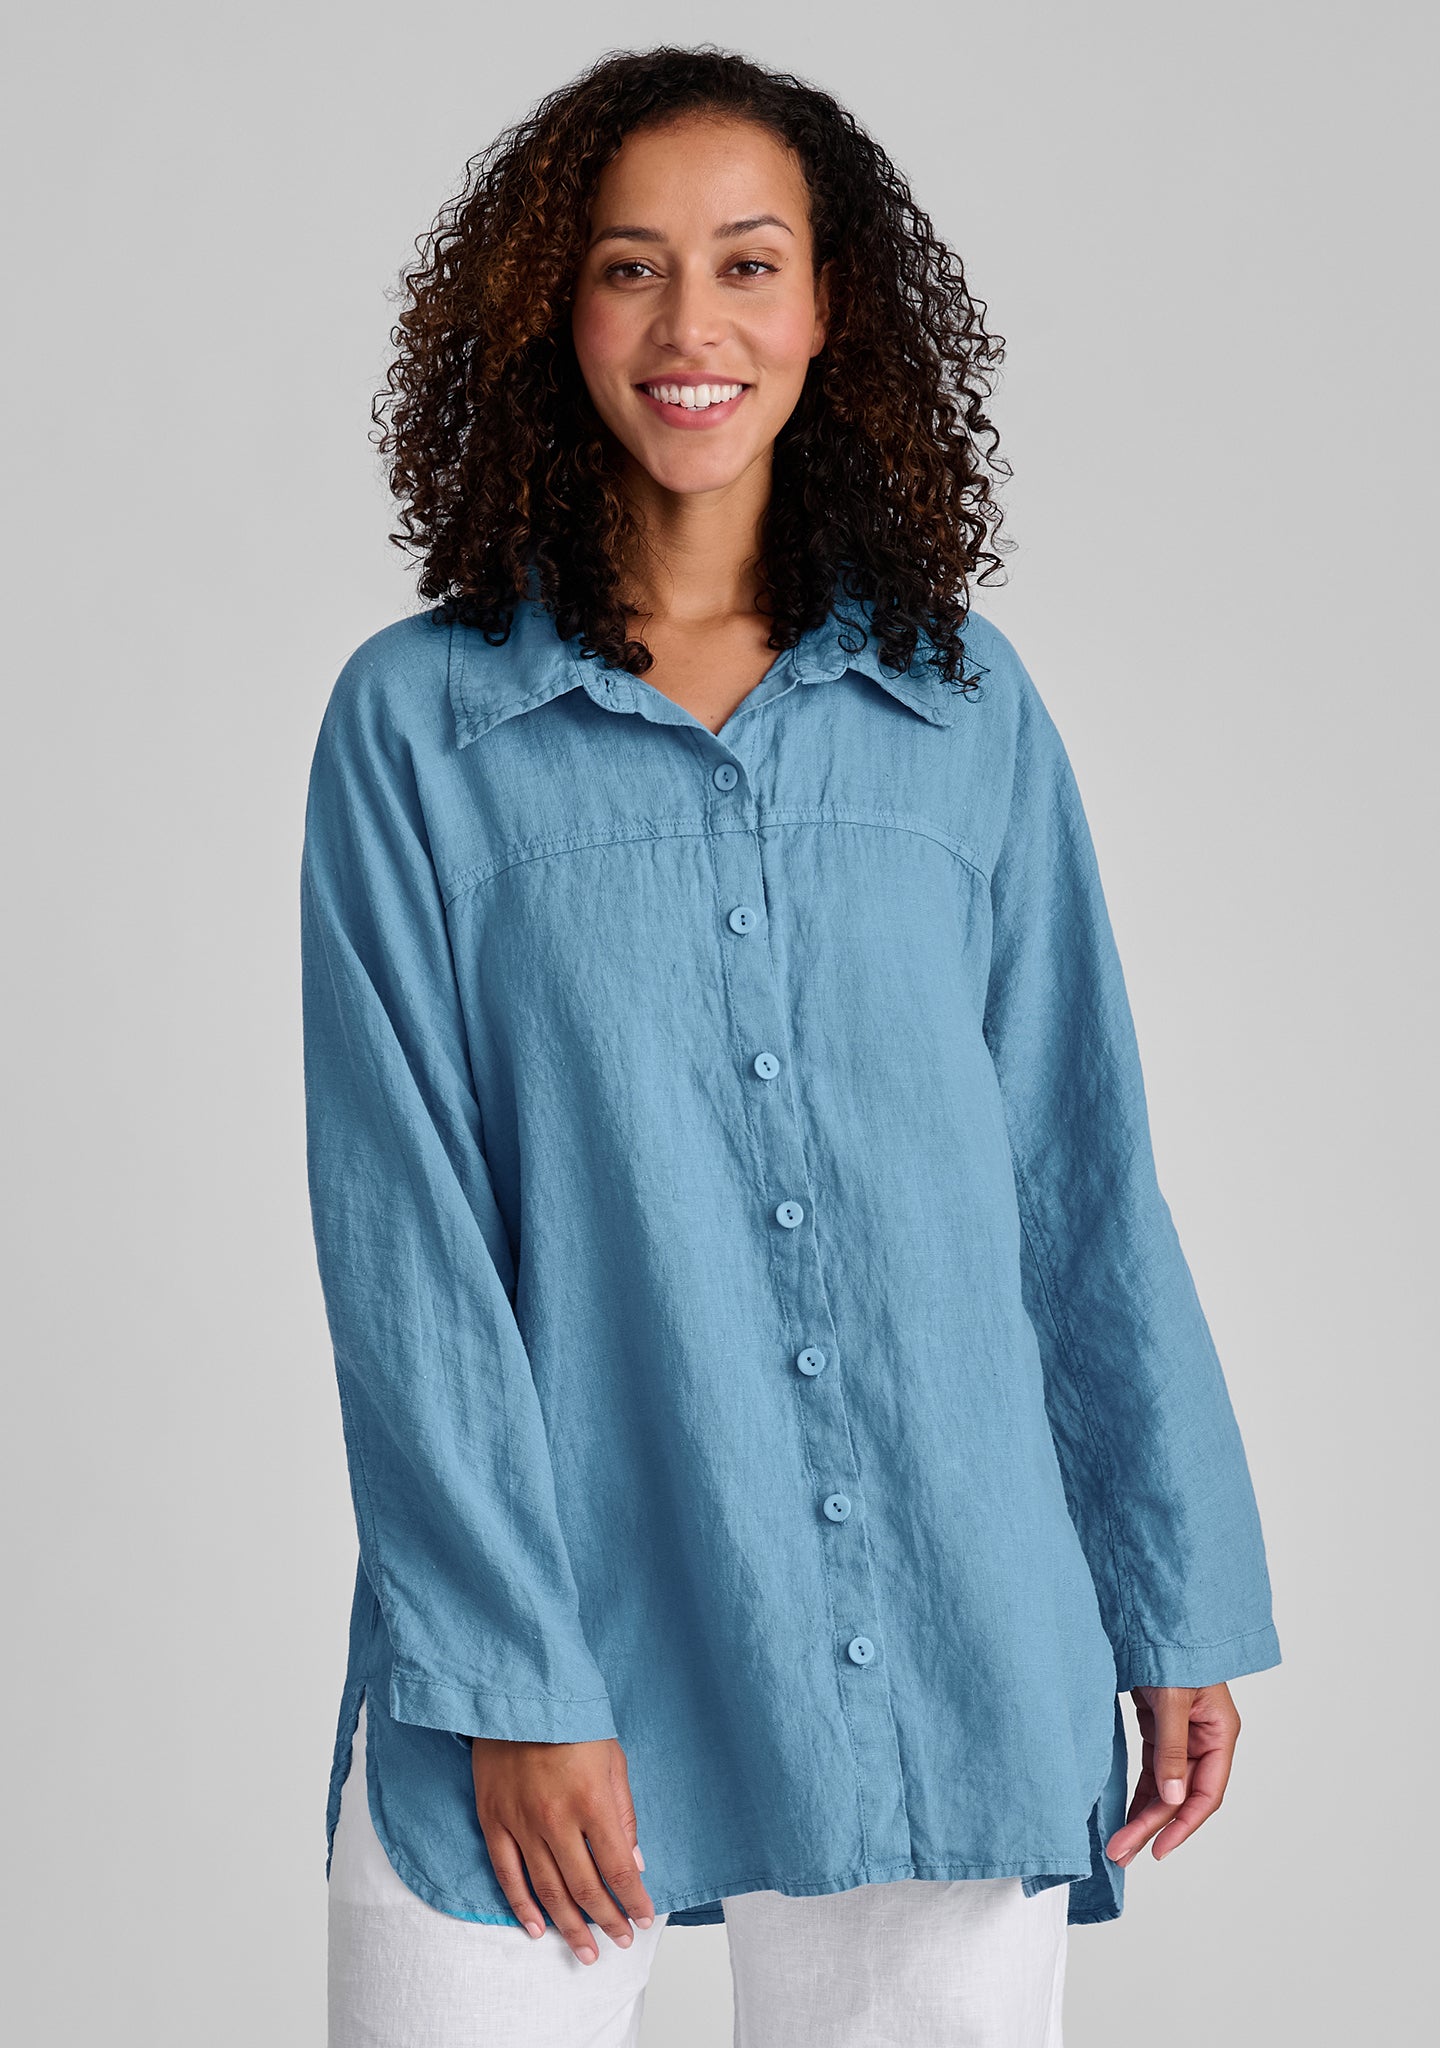 dramatic shirt linen button down shirt blue